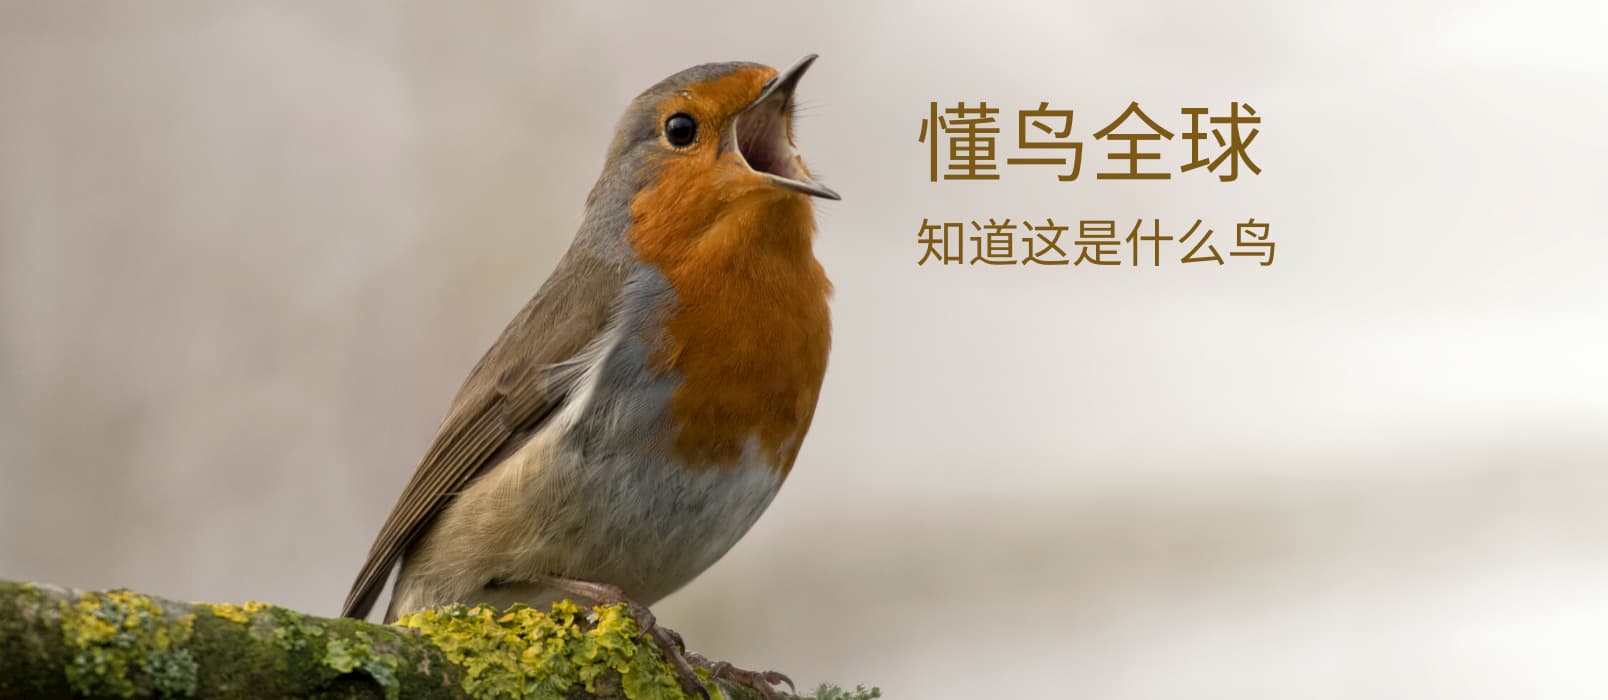 懂鸟全球 - 智能识别 10928 种鸟类名称[微信小程序/Web] 1